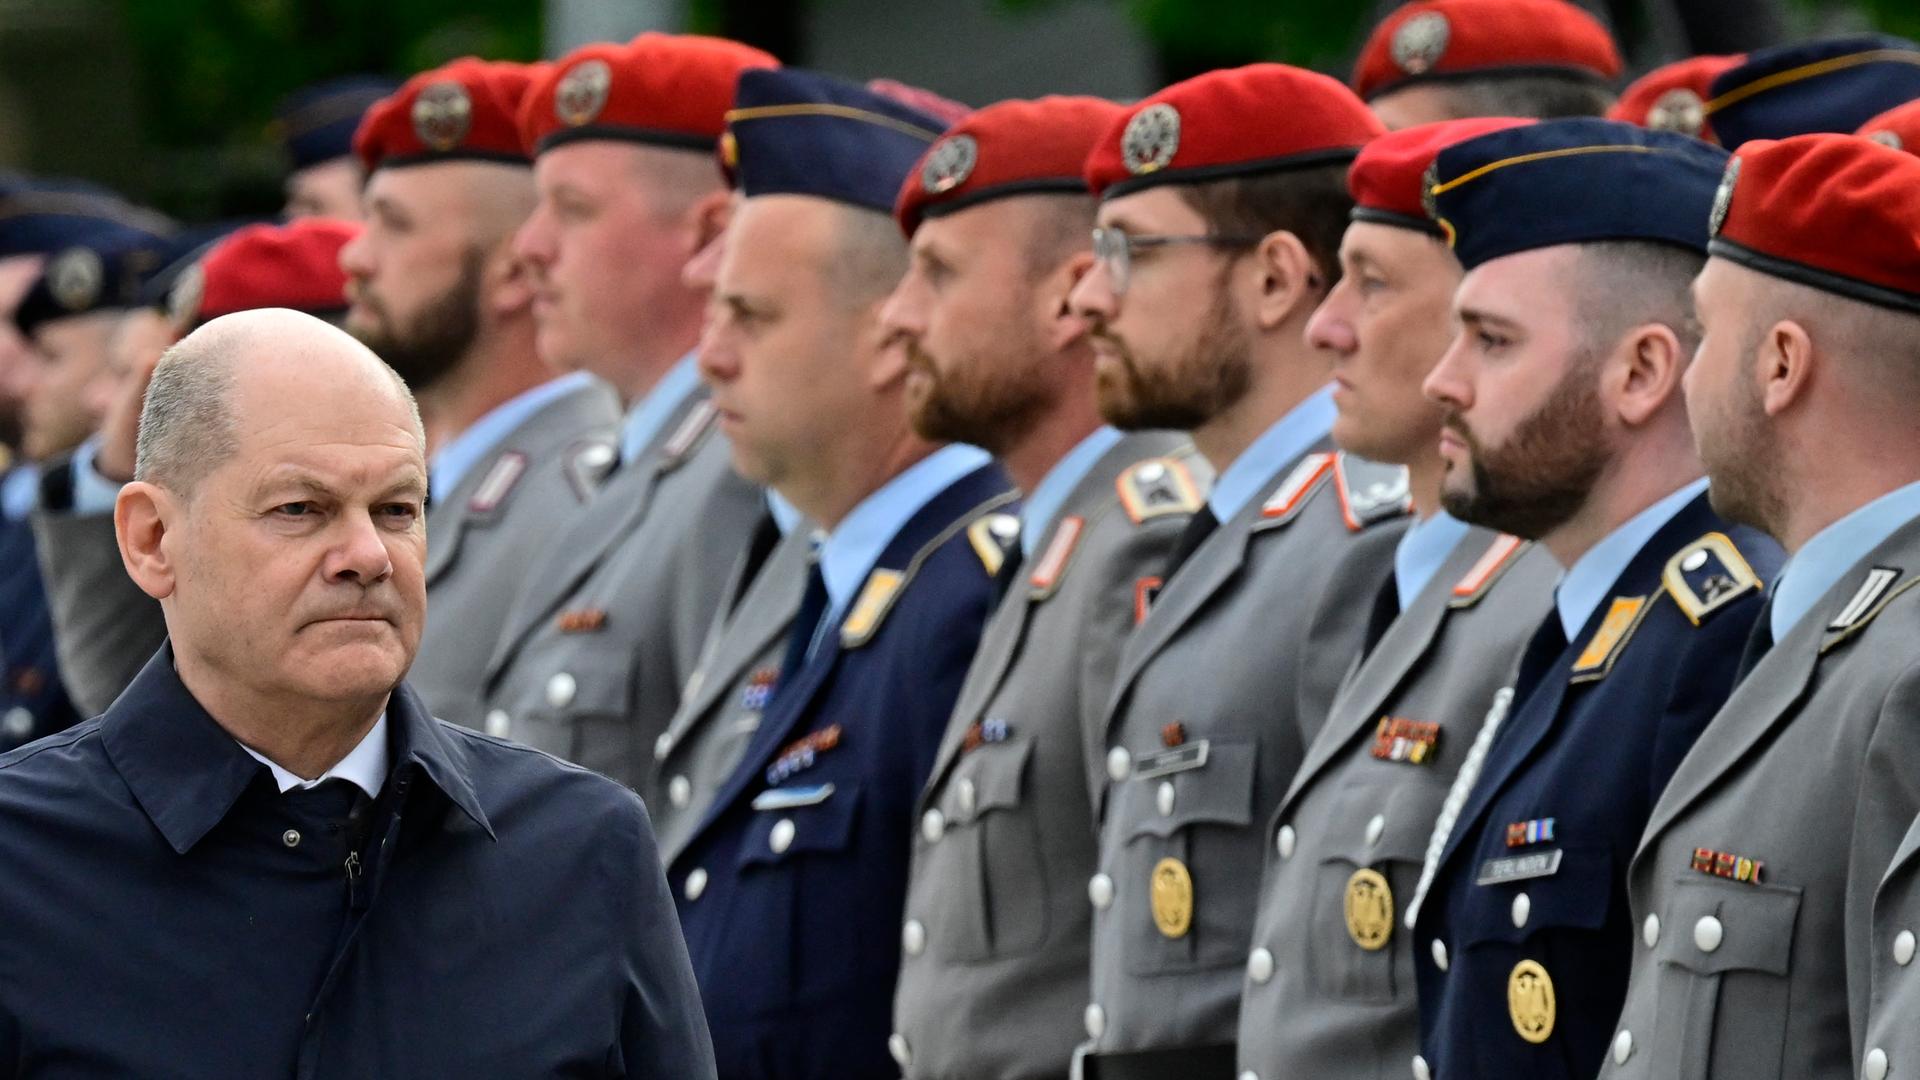 Bundeskanzler Scholz läuft an einer Reihe von Bundeswehr-Soldaten vorbei, denen er für ihren Einsatz in Mali dankt.